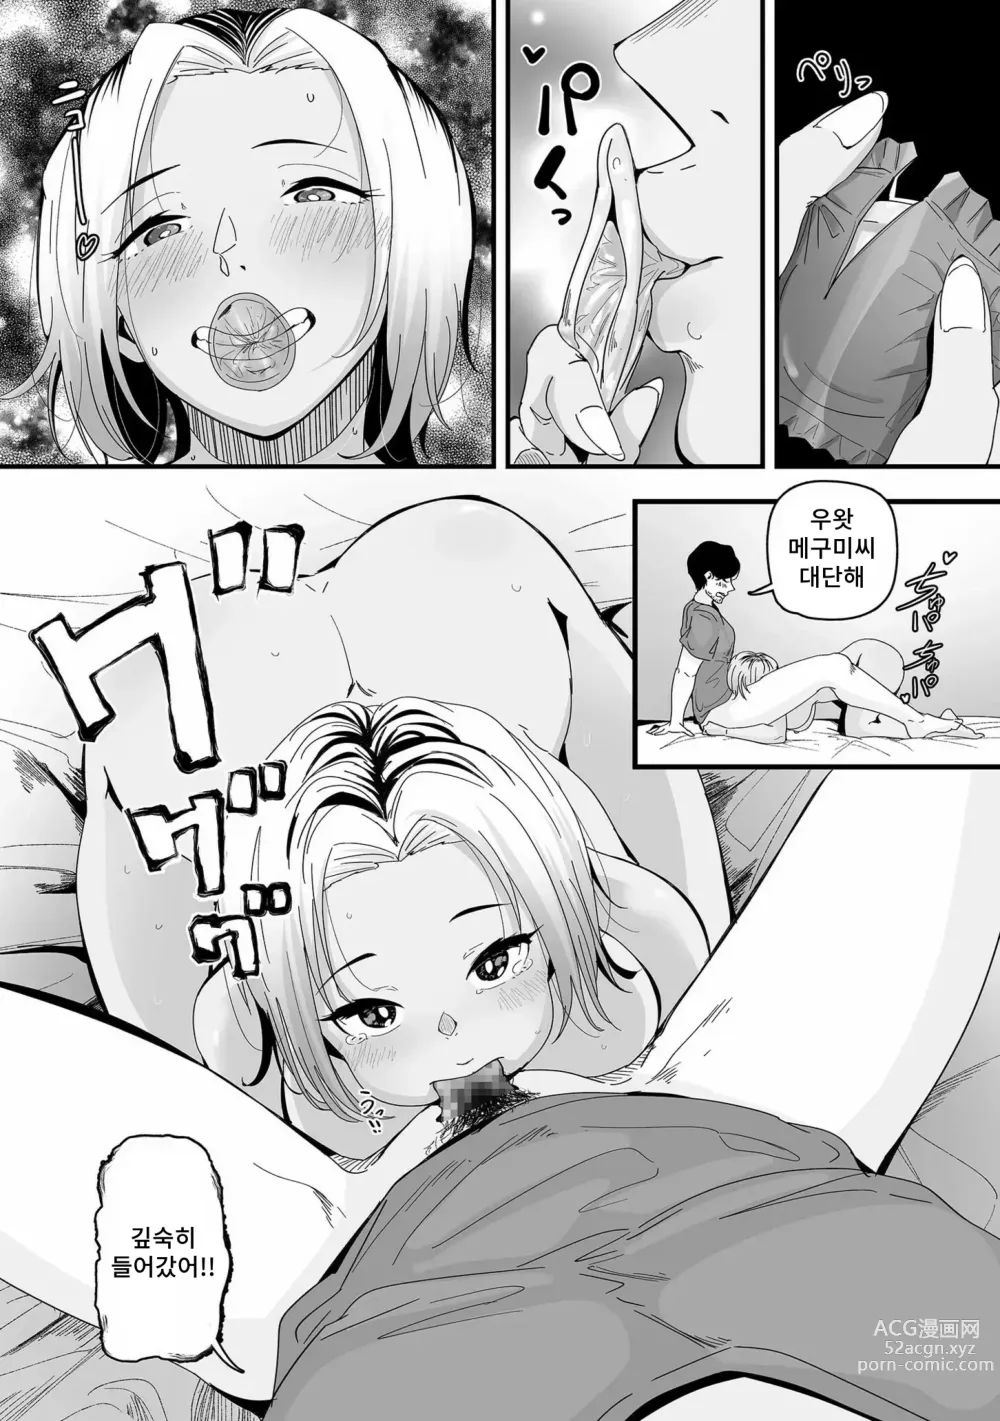 Page 16 of manga 빗치의 첫 애널 잘먹겠습니다!